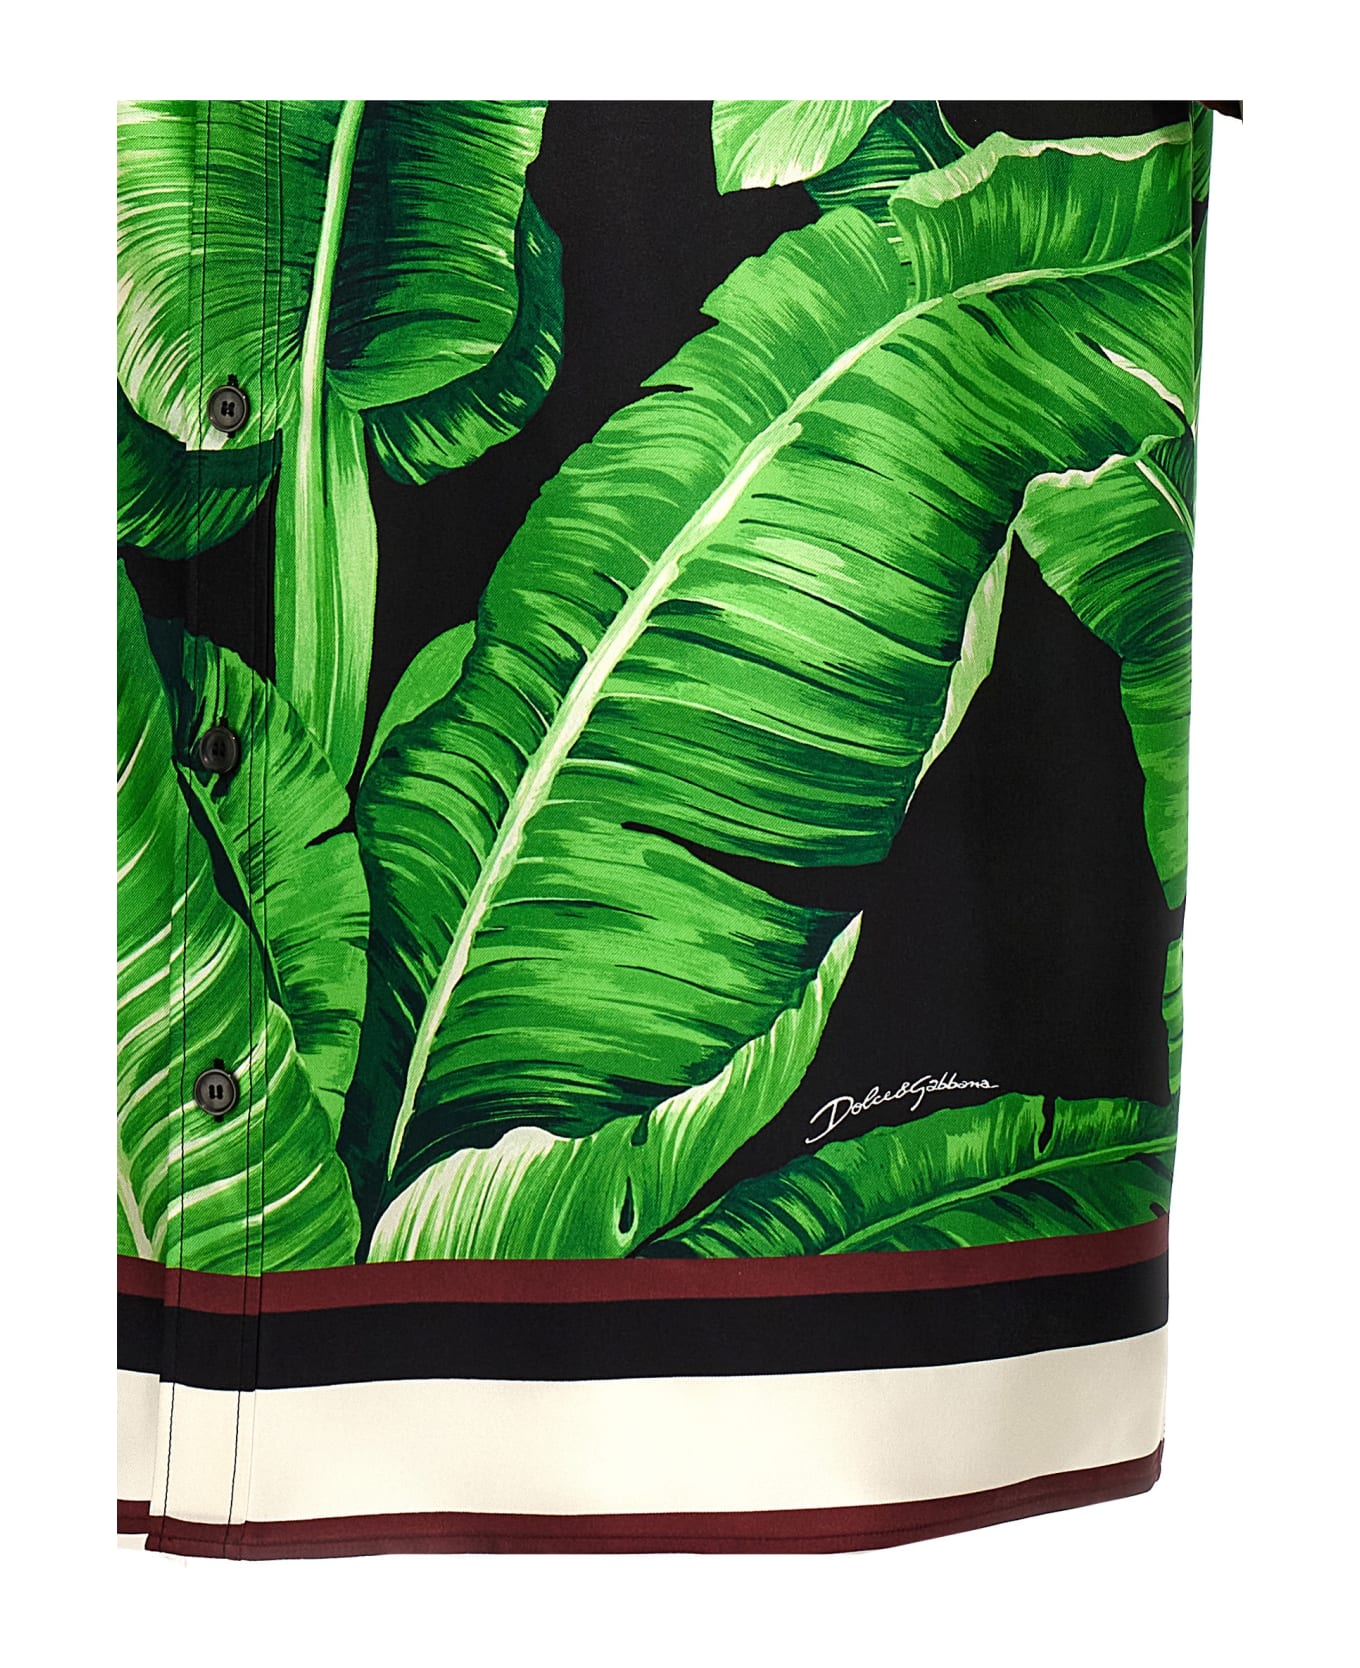 Dolce & Gabbana 'banano' Shirt - GREEN/BLACK